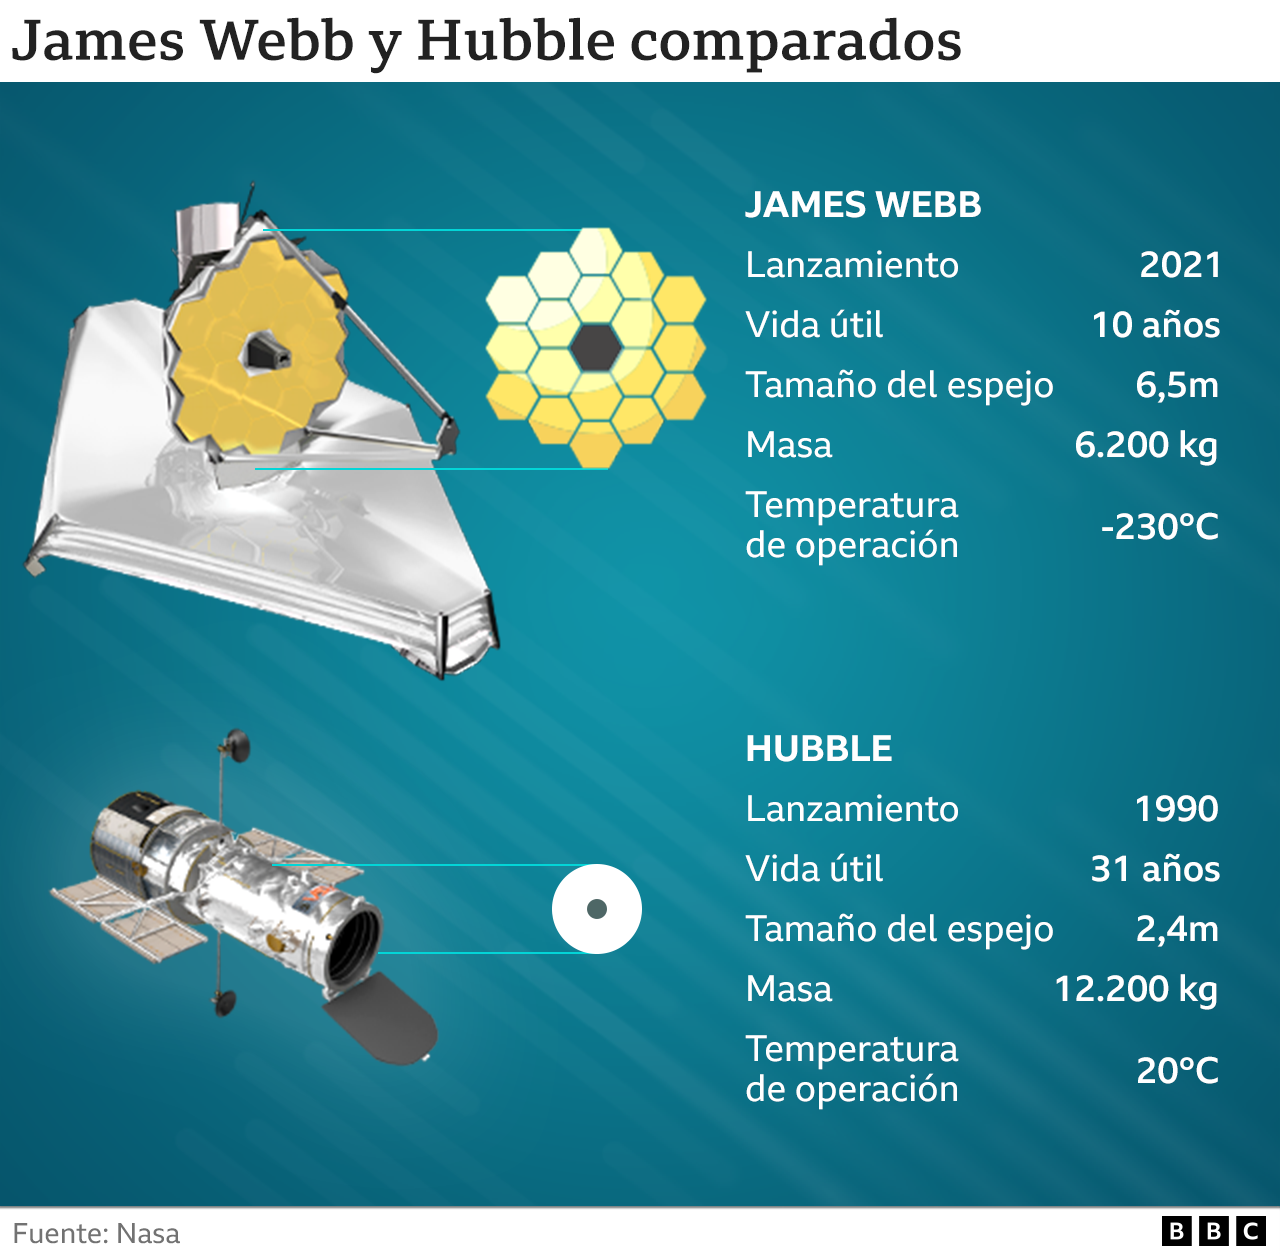 Gráfico comparativo del Webb y el Hubble